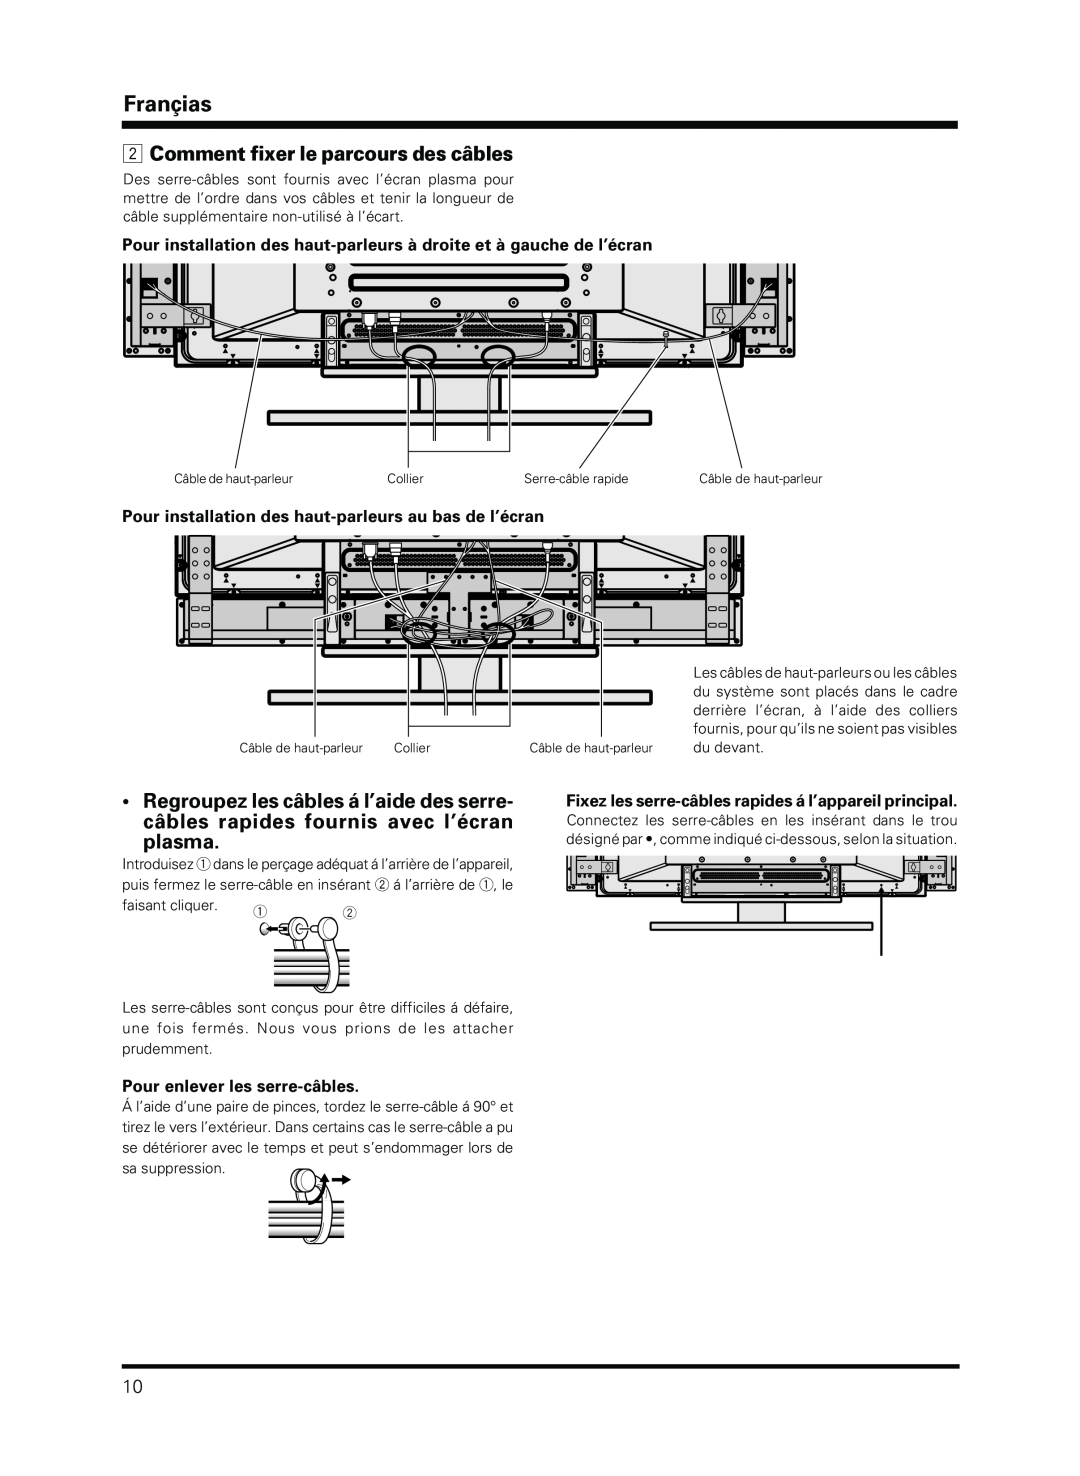 Pioneer PDP-S13-LR Comment fixer le parcours des câbles, Pour installation des haut-parleurs au bas de l’écran, Françias 